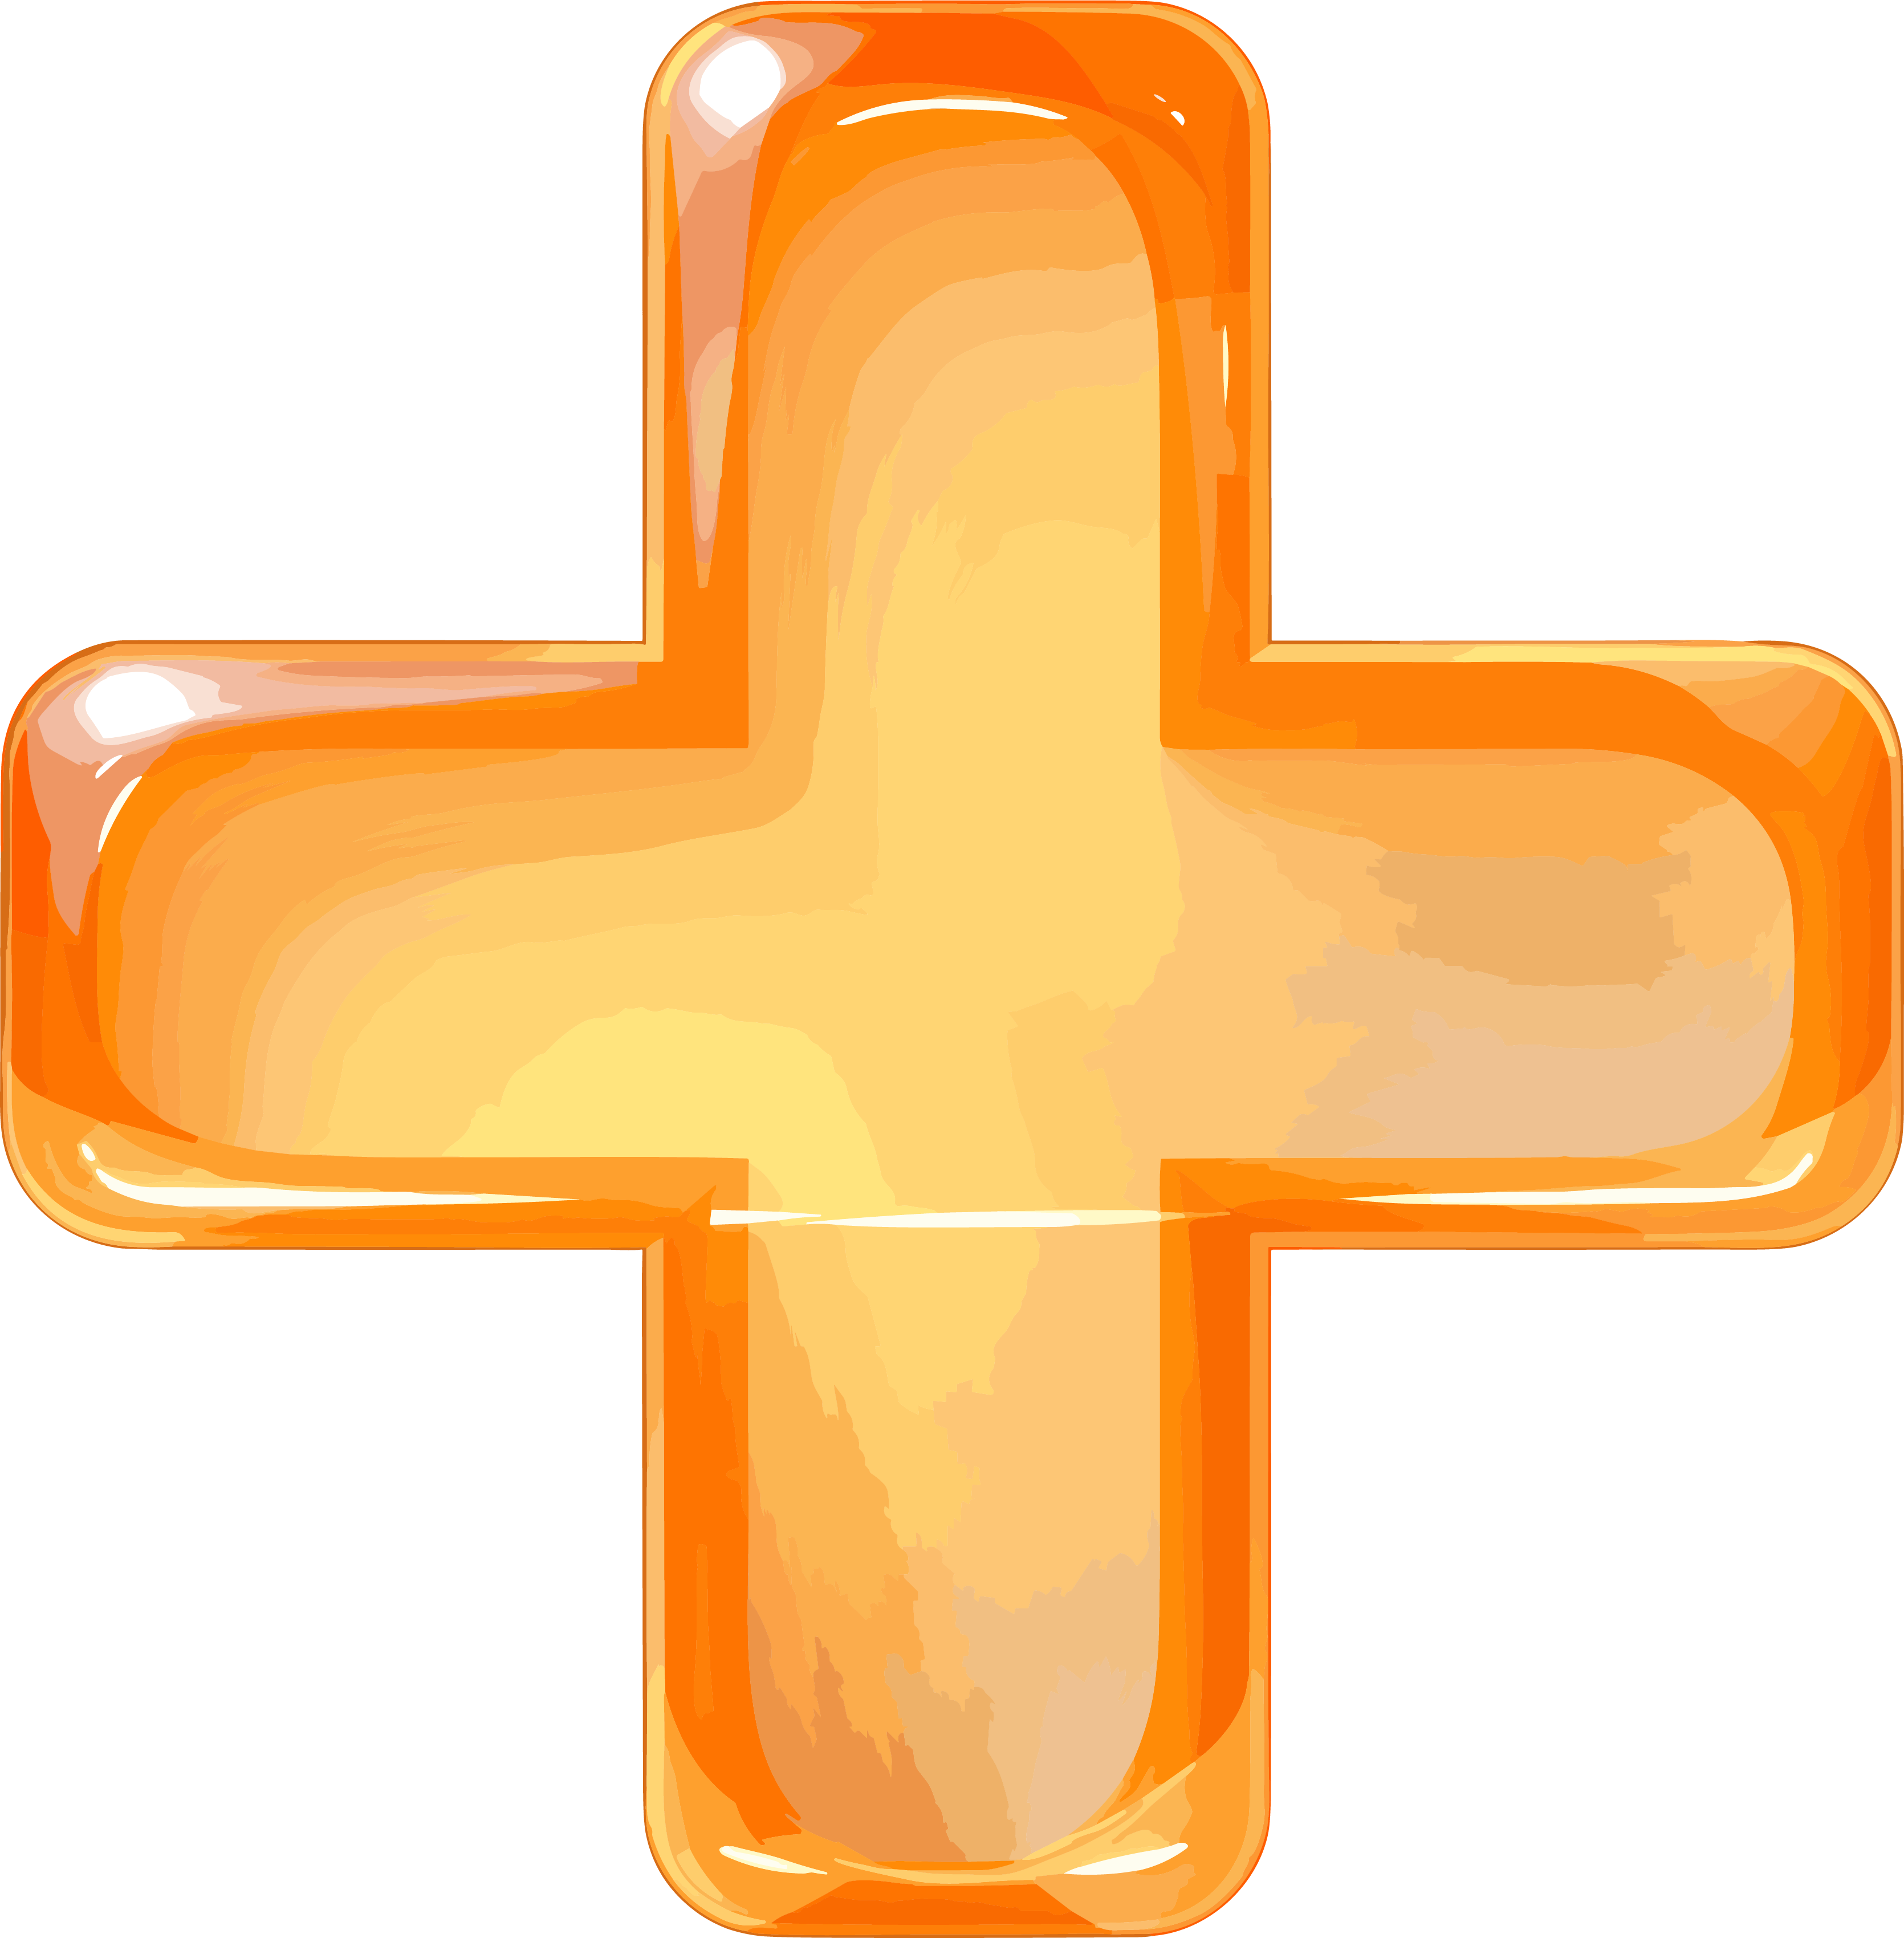 橙色十字符号透明背景PNG图形素材